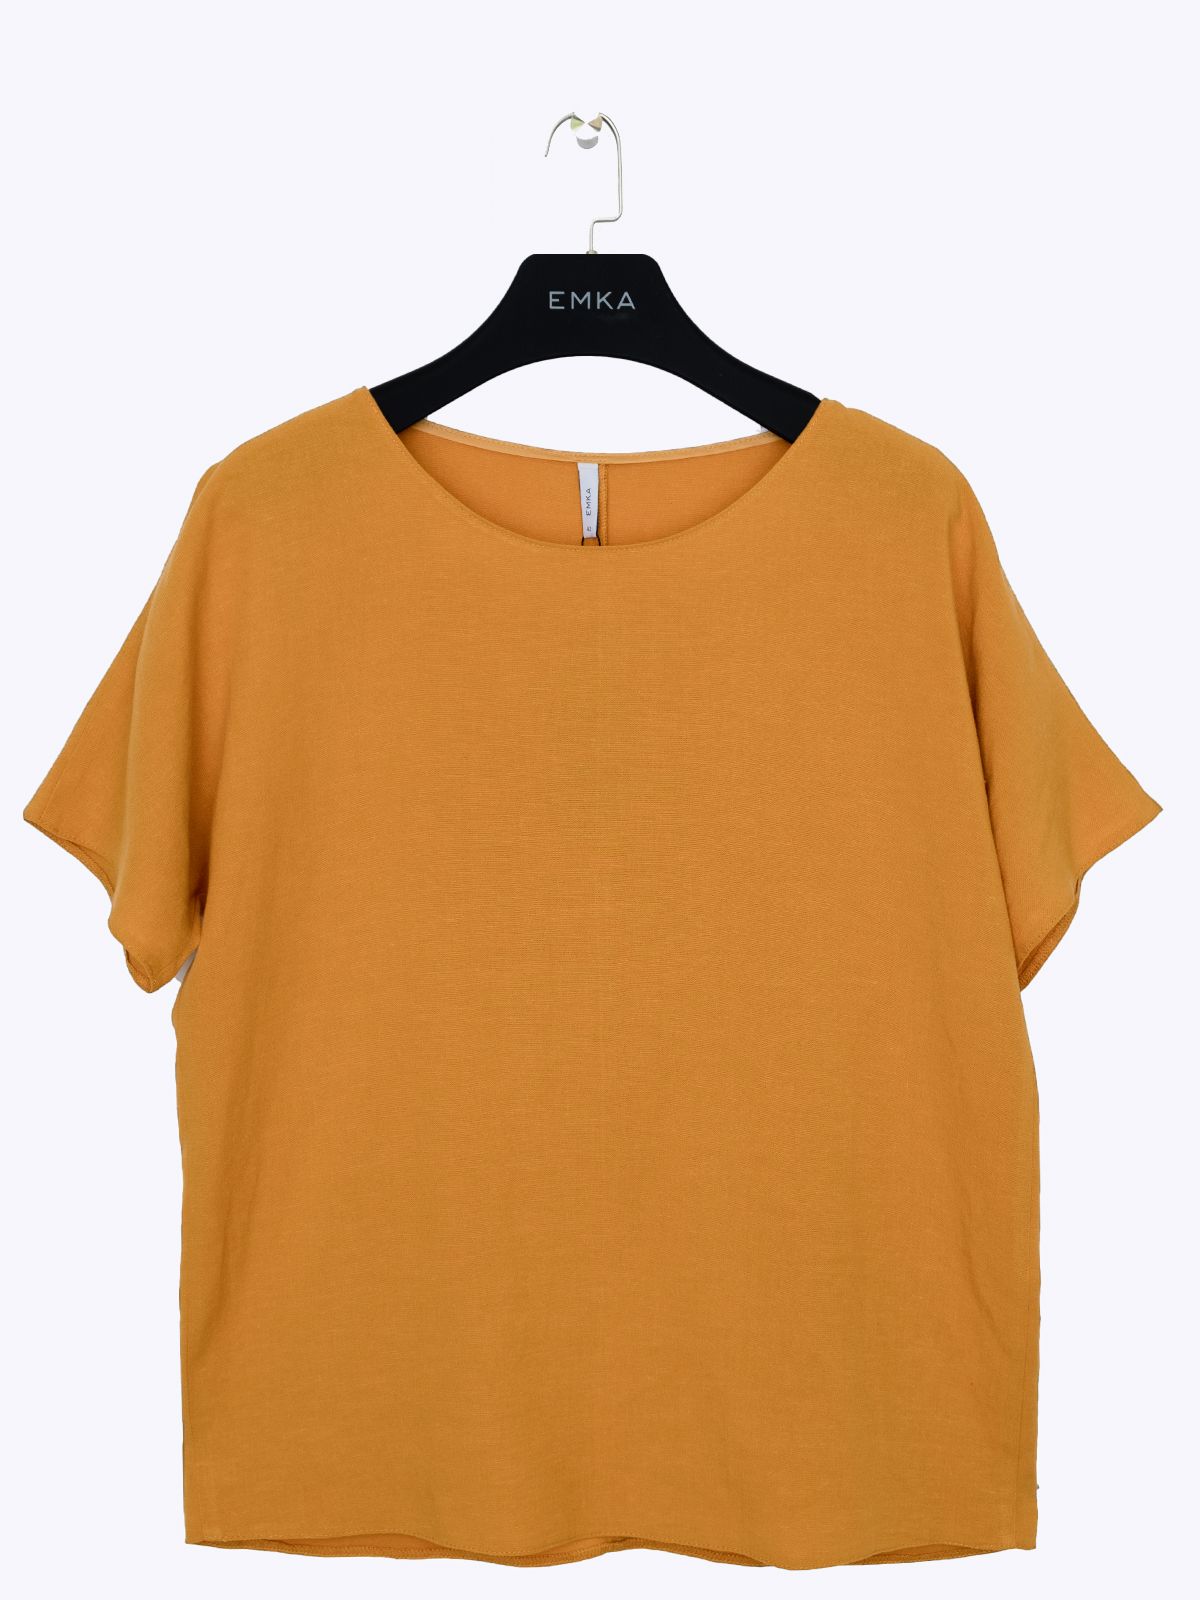 Блузка B2462/orange